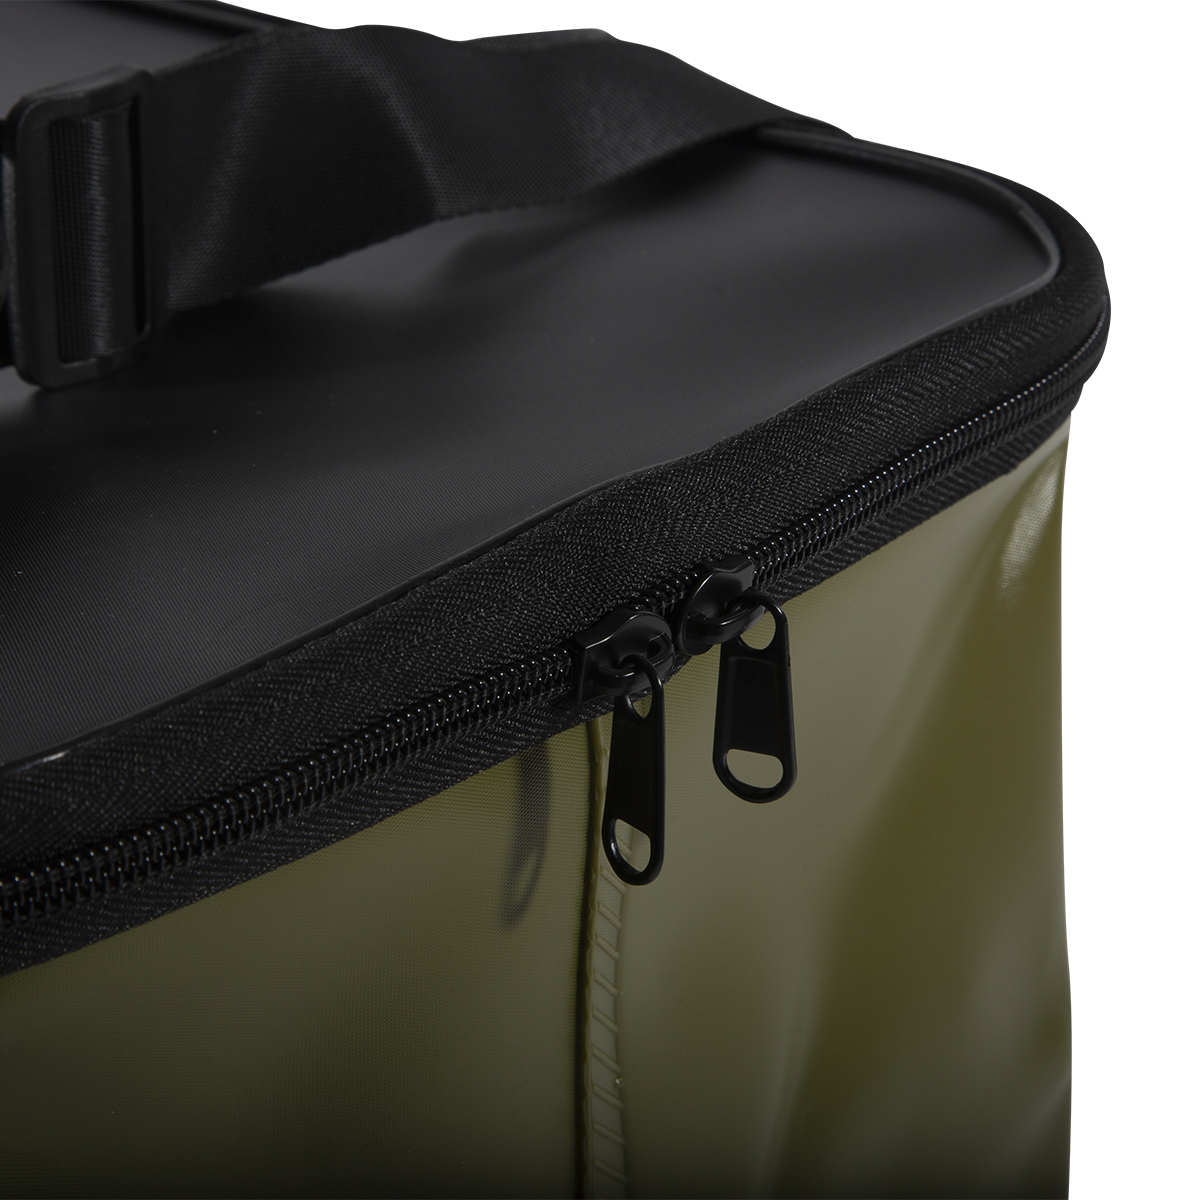 Tactic Carp Waterproof Luggage Bolsas Impermeables - Big & Medium Green